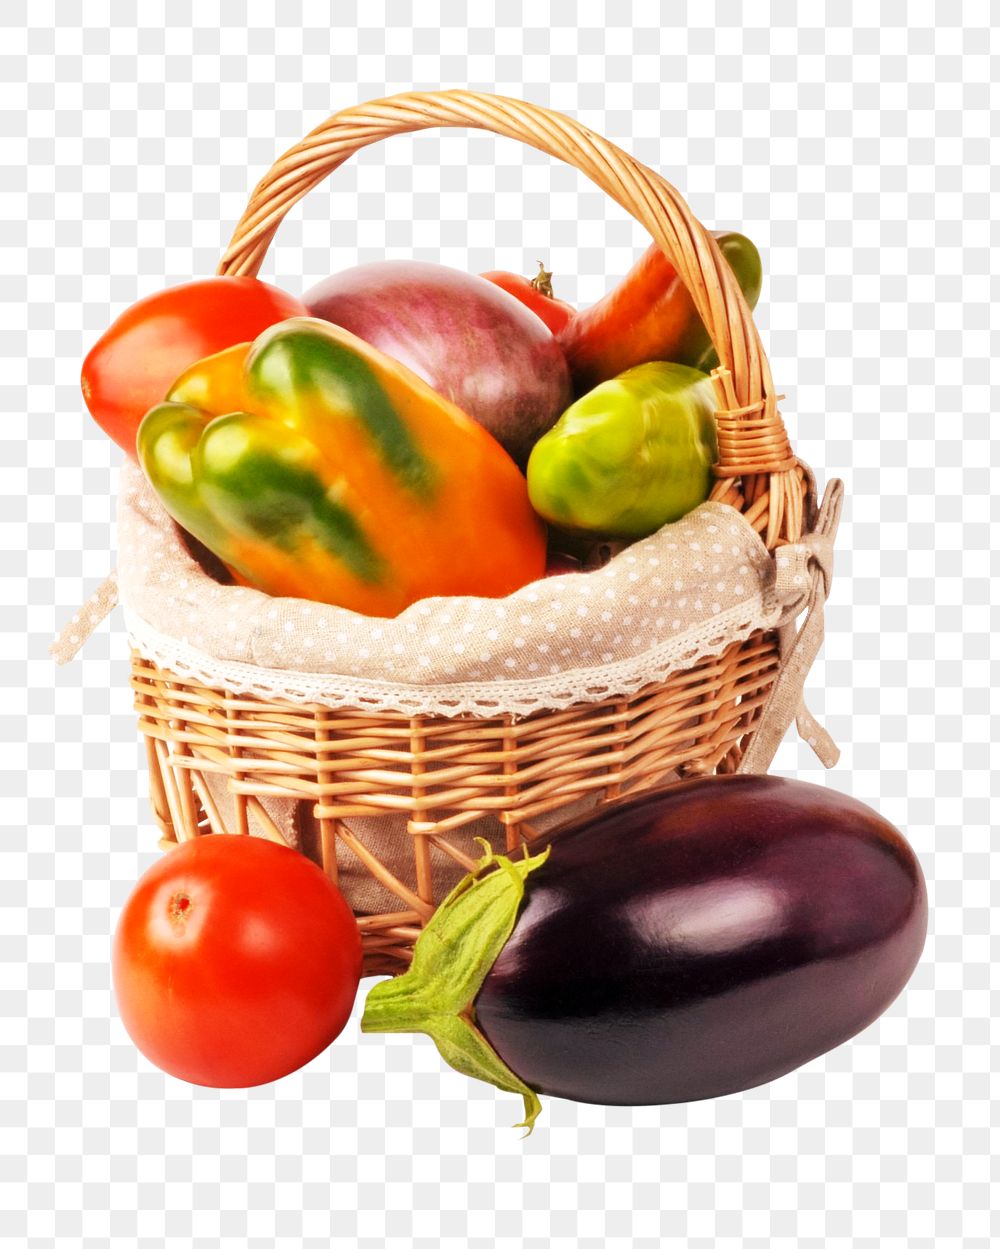 Vegetables basket png sticker, transparent background